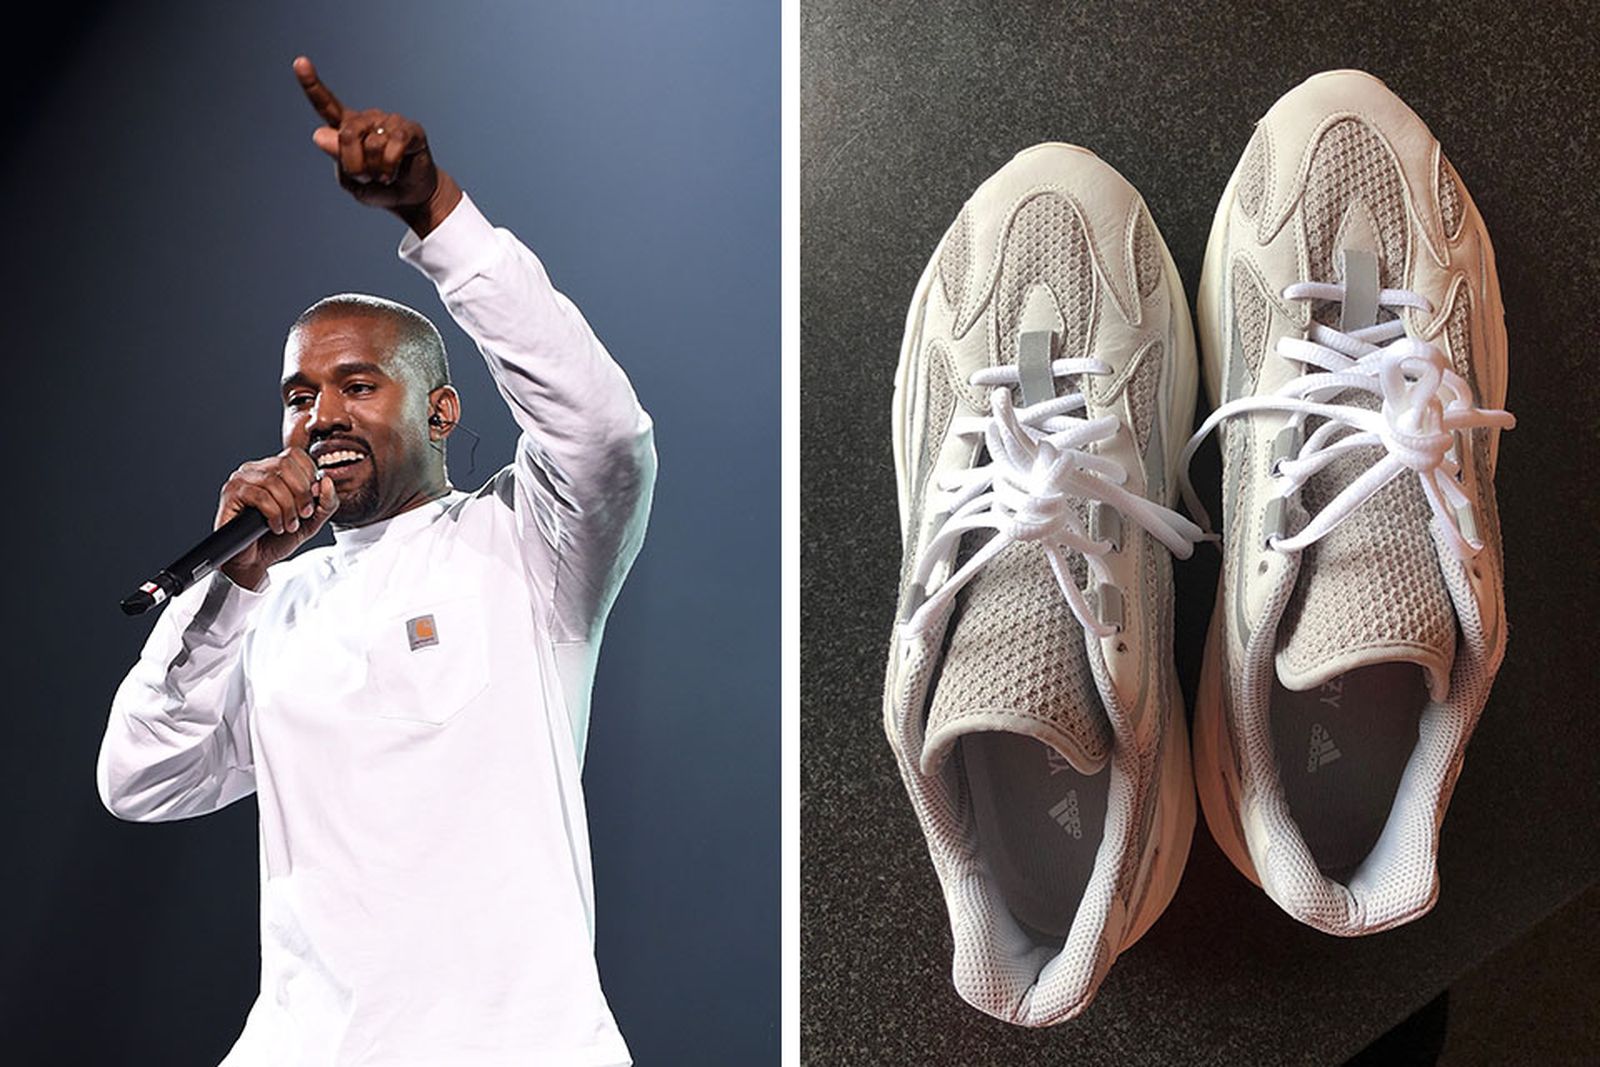 Stylish and Sensual: The Hottest Adidas x Kanye West Looks